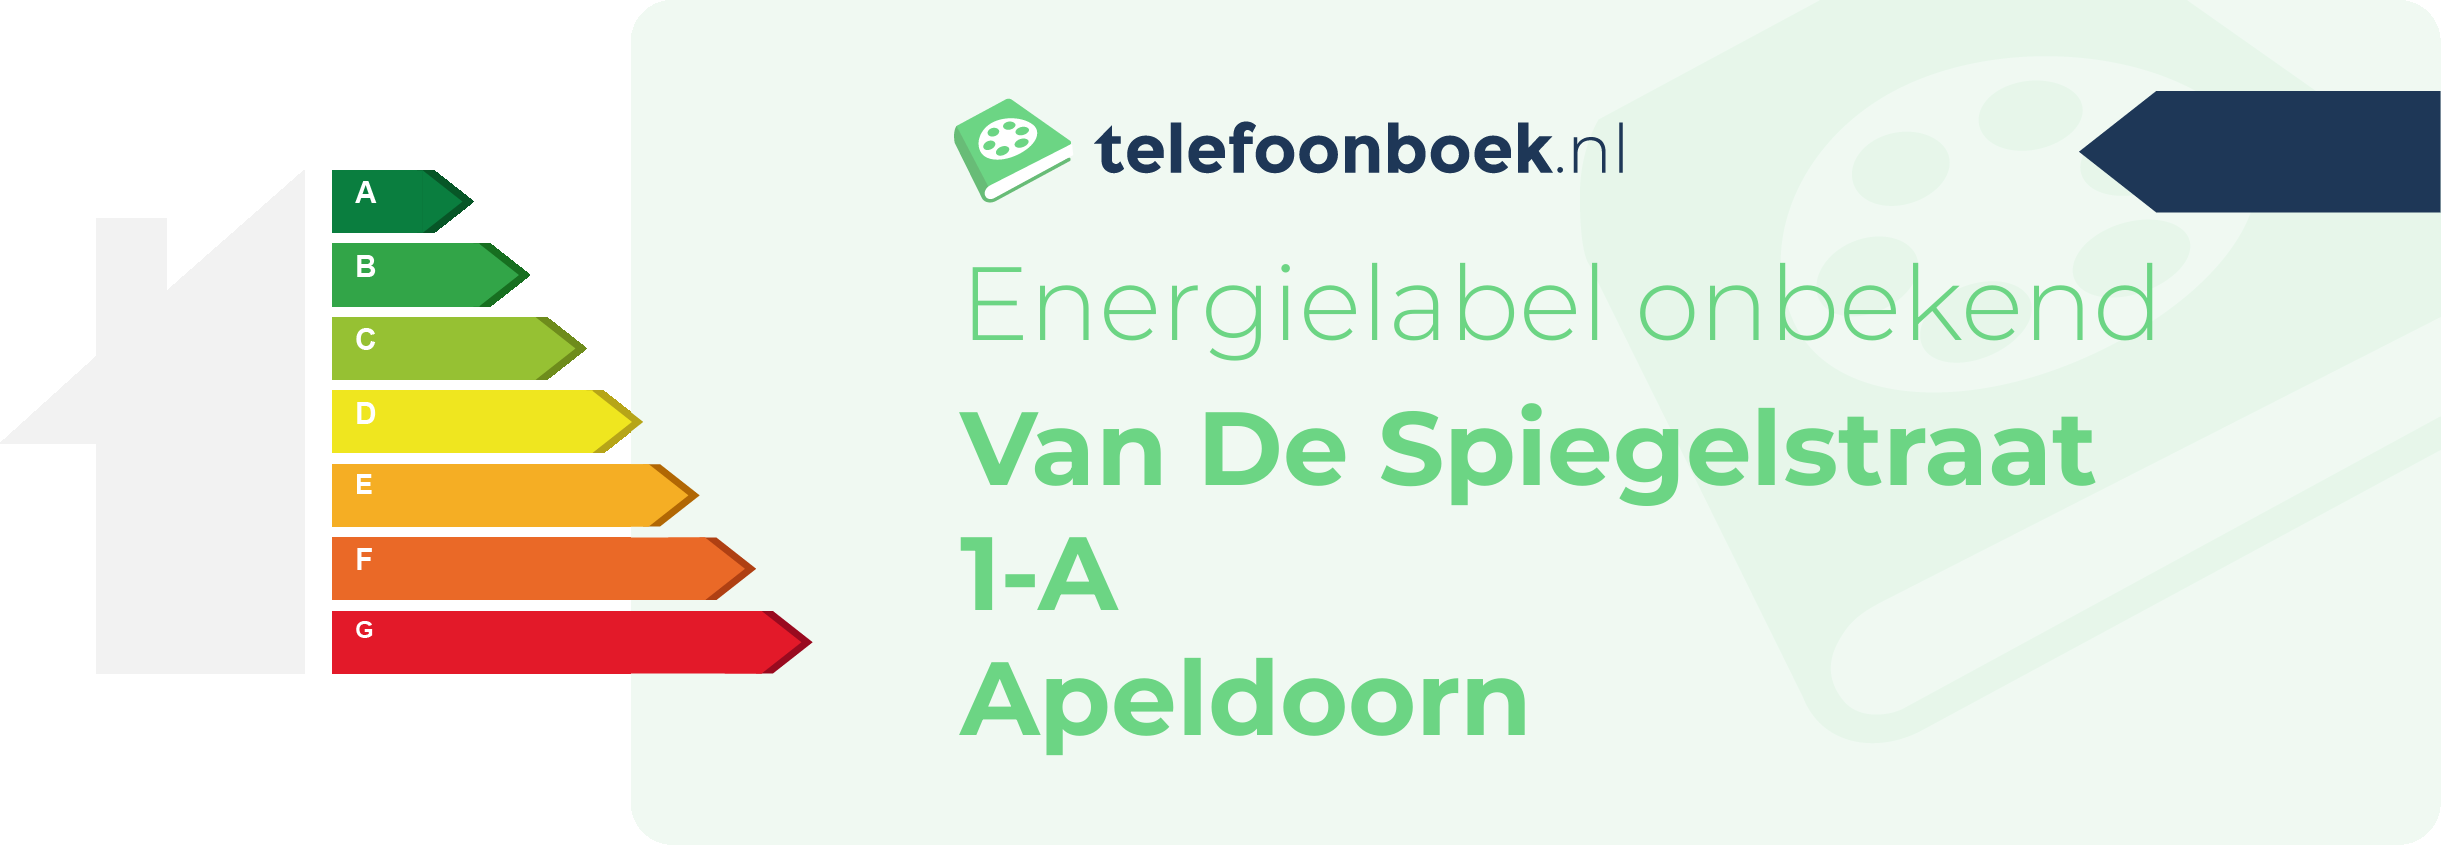 Energielabel Van De Spiegelstraat 1-A Apeldoorn